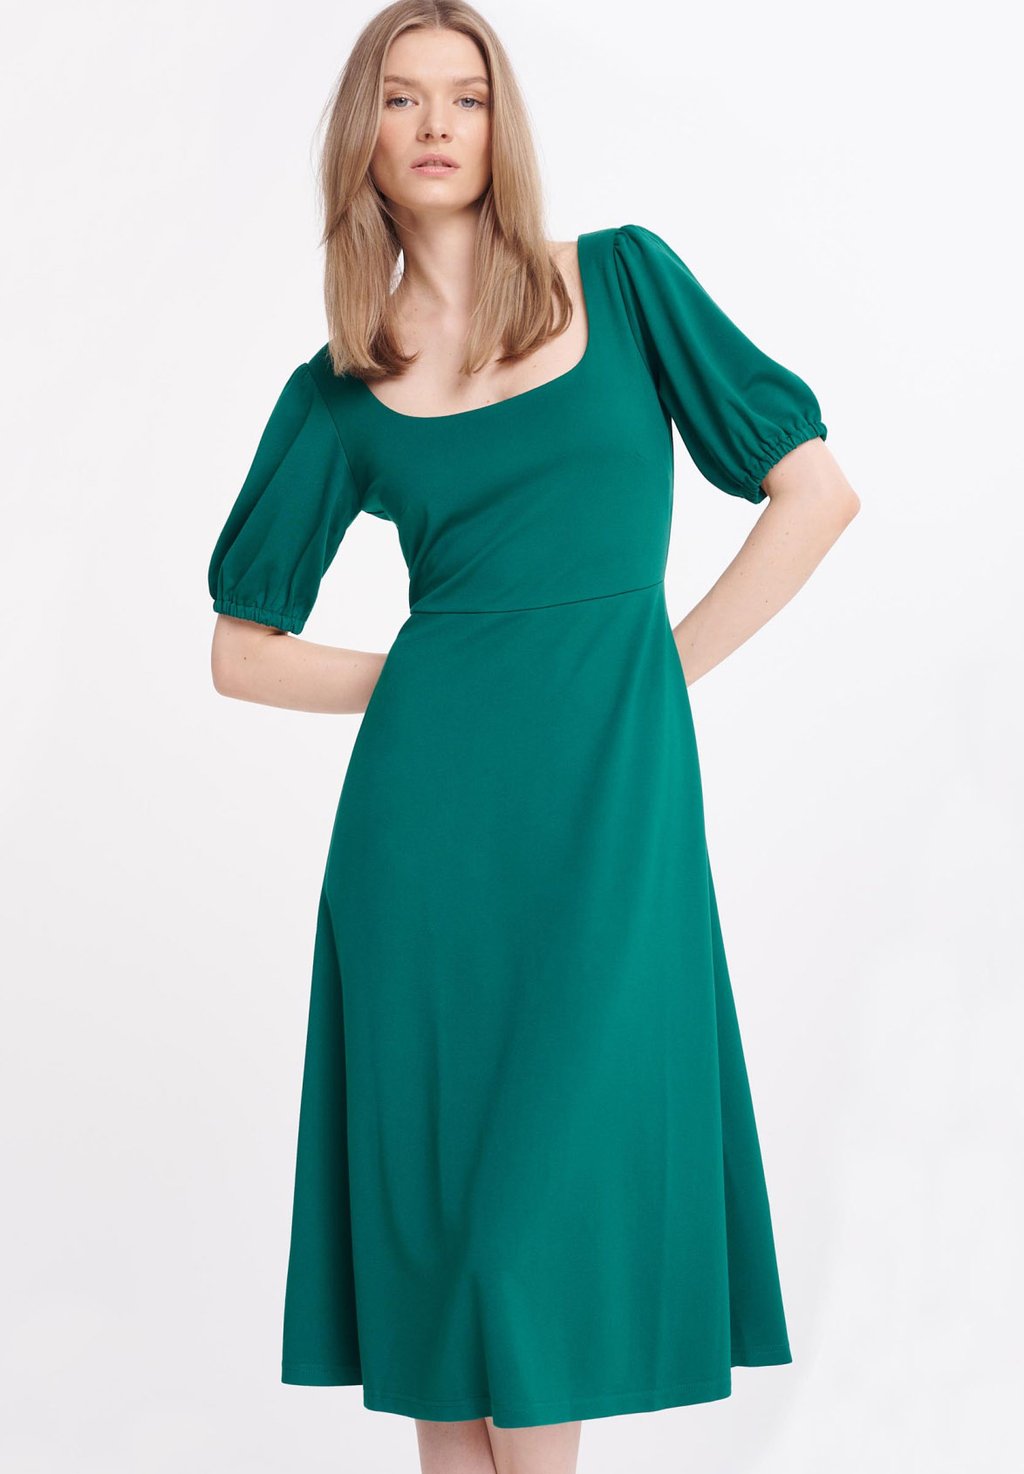 Повседневное платье Greenpoint, цвет green повседневное платье sukienka greenpoint цвет black white dots